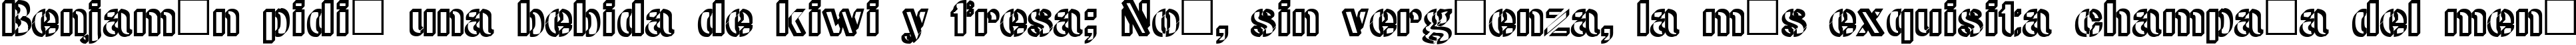 Пример написания шрифтом CW Roundwrite Normal текста на испанском